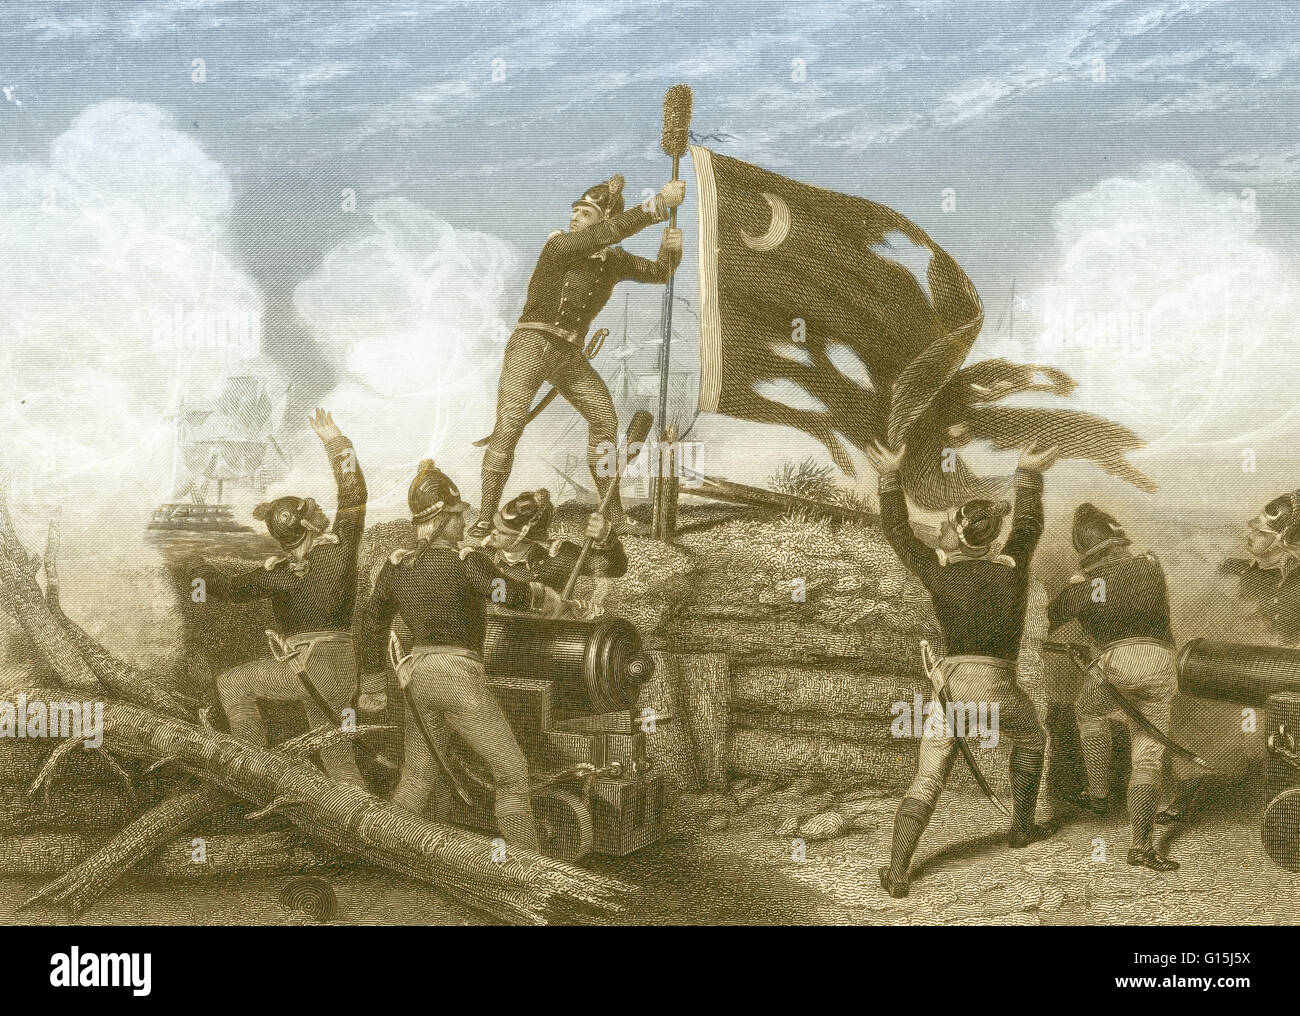 Color ilustración mejorada de la defensa de Fort Moultrie, SC en 1776. El 28 de junio, a principios de la Guerra Revolucionaria Americana, buques de guerra británicos atacaron el fuerte posteriormente denominado William Moultrie que comandaba el regimiento que defendieron con éxito. T Foto de stock